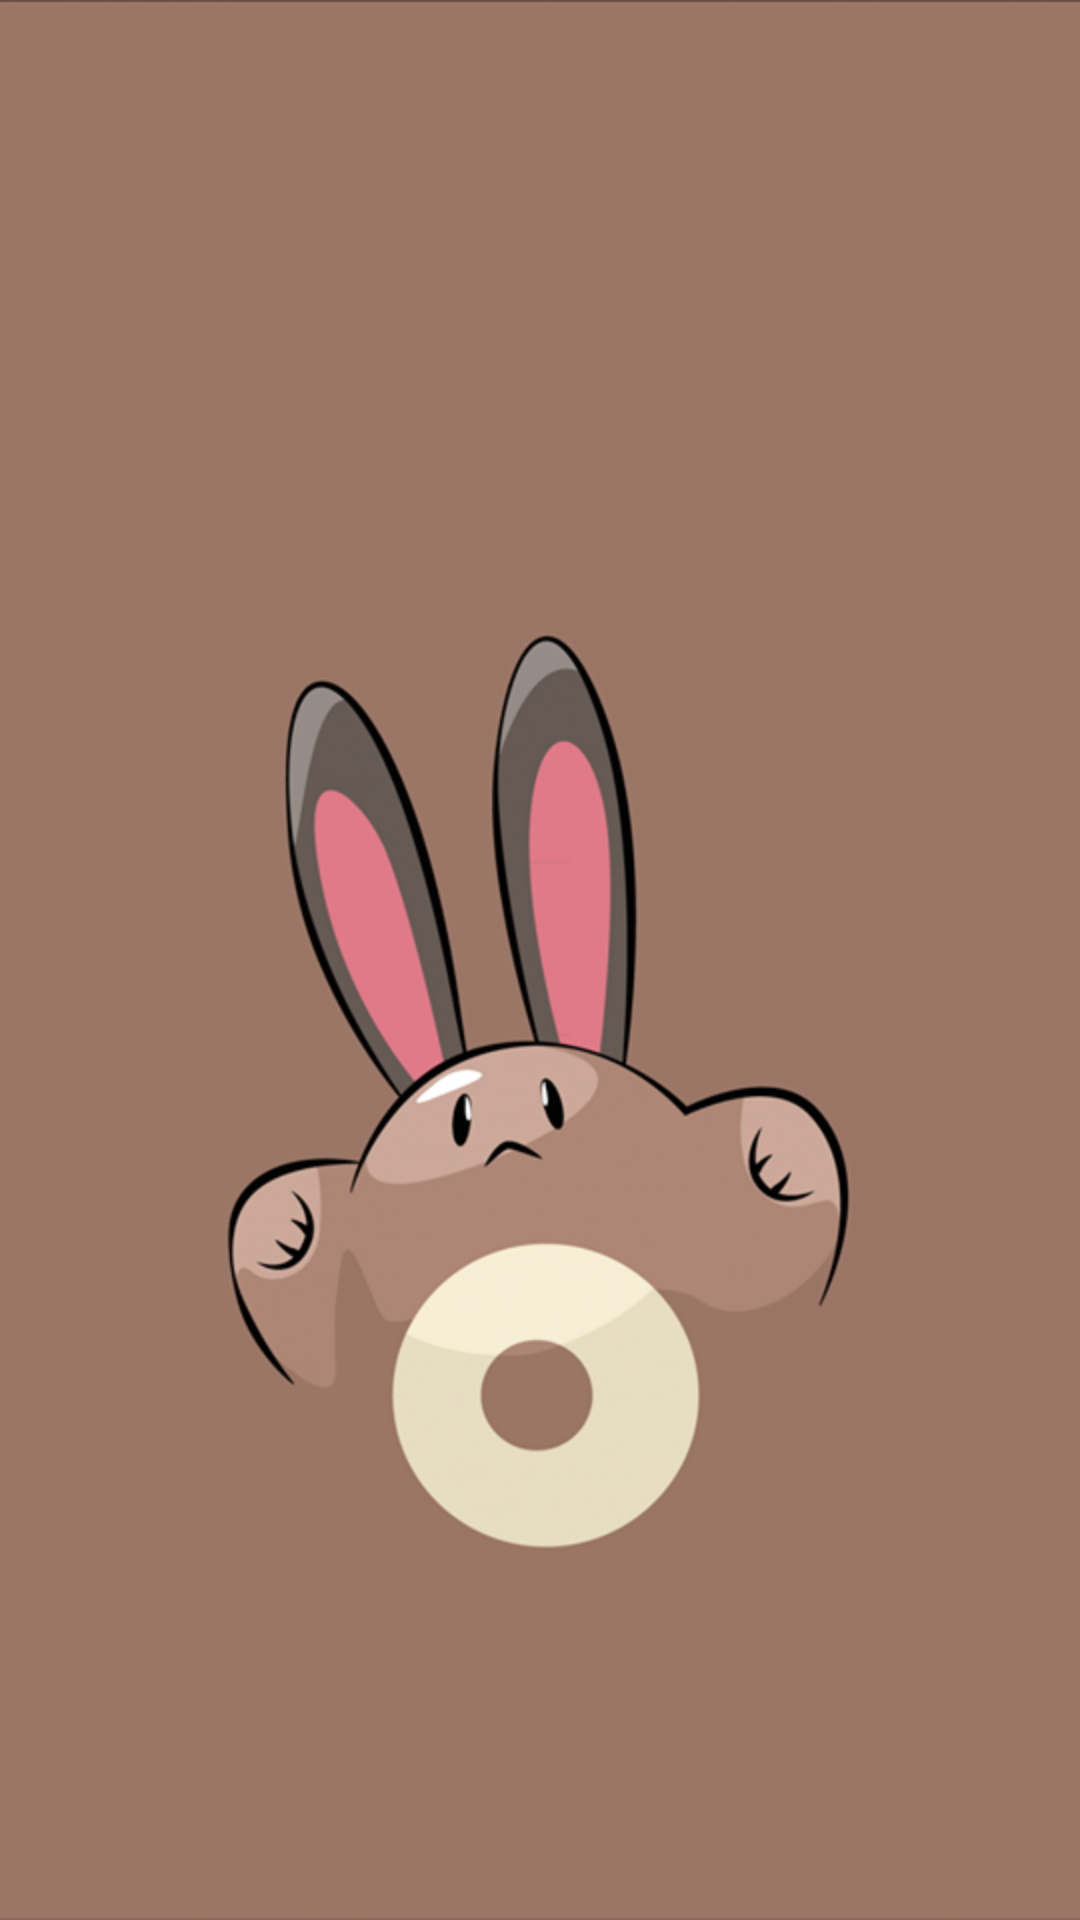 Sentret – Tap to see more Pokemon Go Pokemons wallpaper …